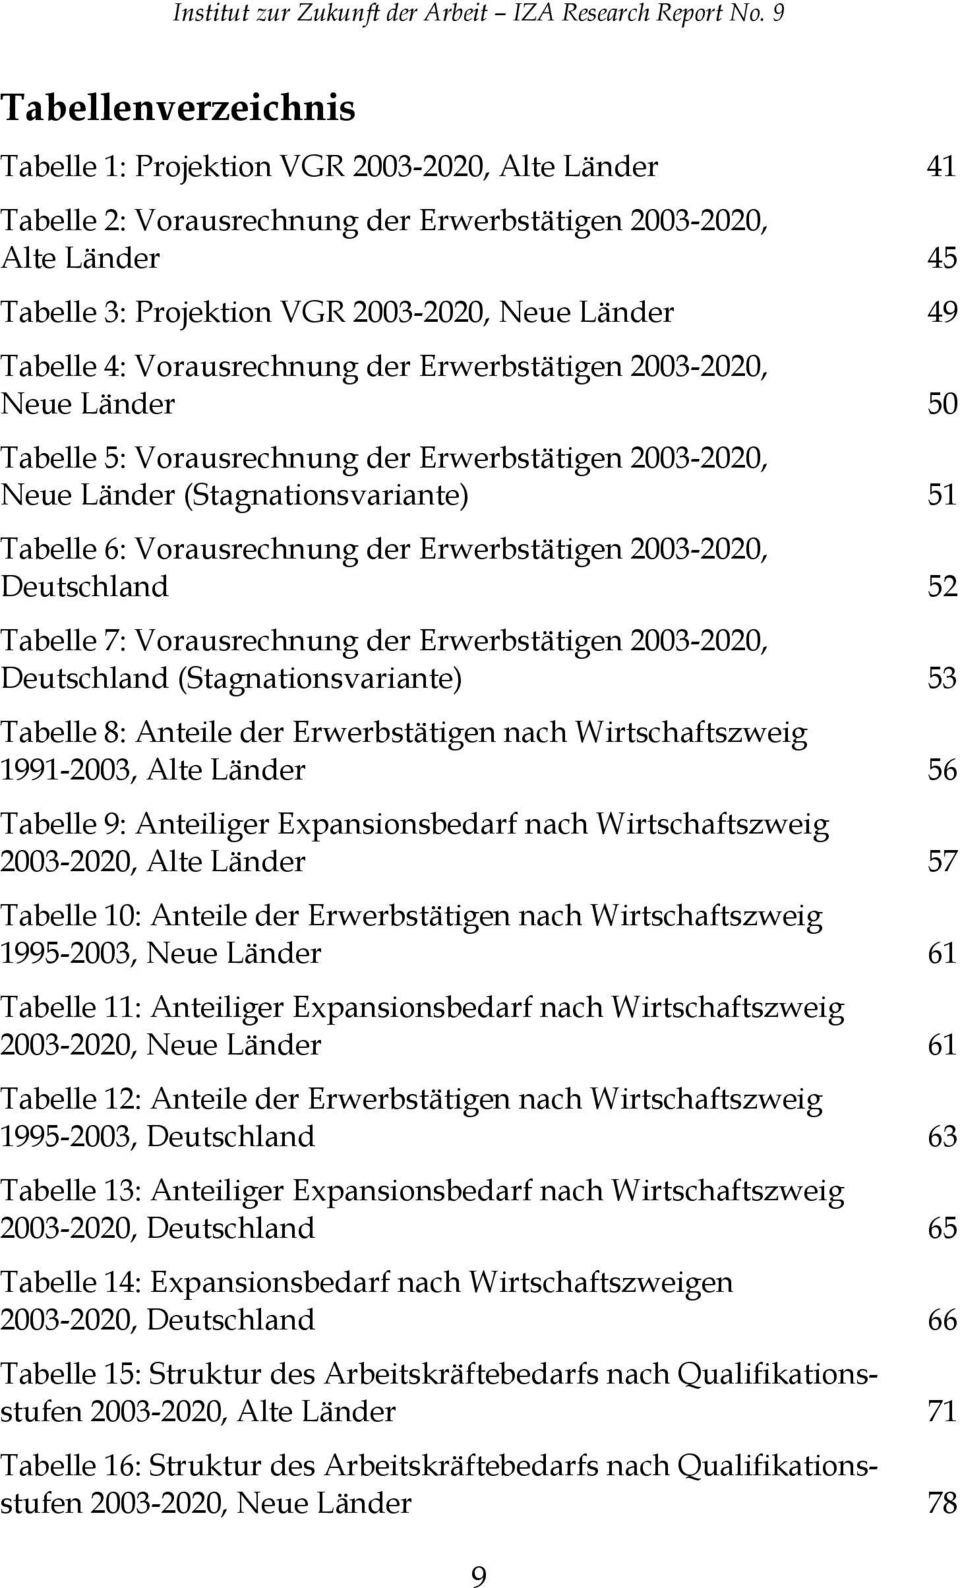 Erwerbstätigen 2003-2020, Deutschland 52 Tabelle 7: Vorausrechnung der Erwerbstätigen 2003-2020, Deutschland (Stagnationsvariante) 53 Tabelle 8: Anteile der Erwerbstätigen nach Wirtschaftszweig